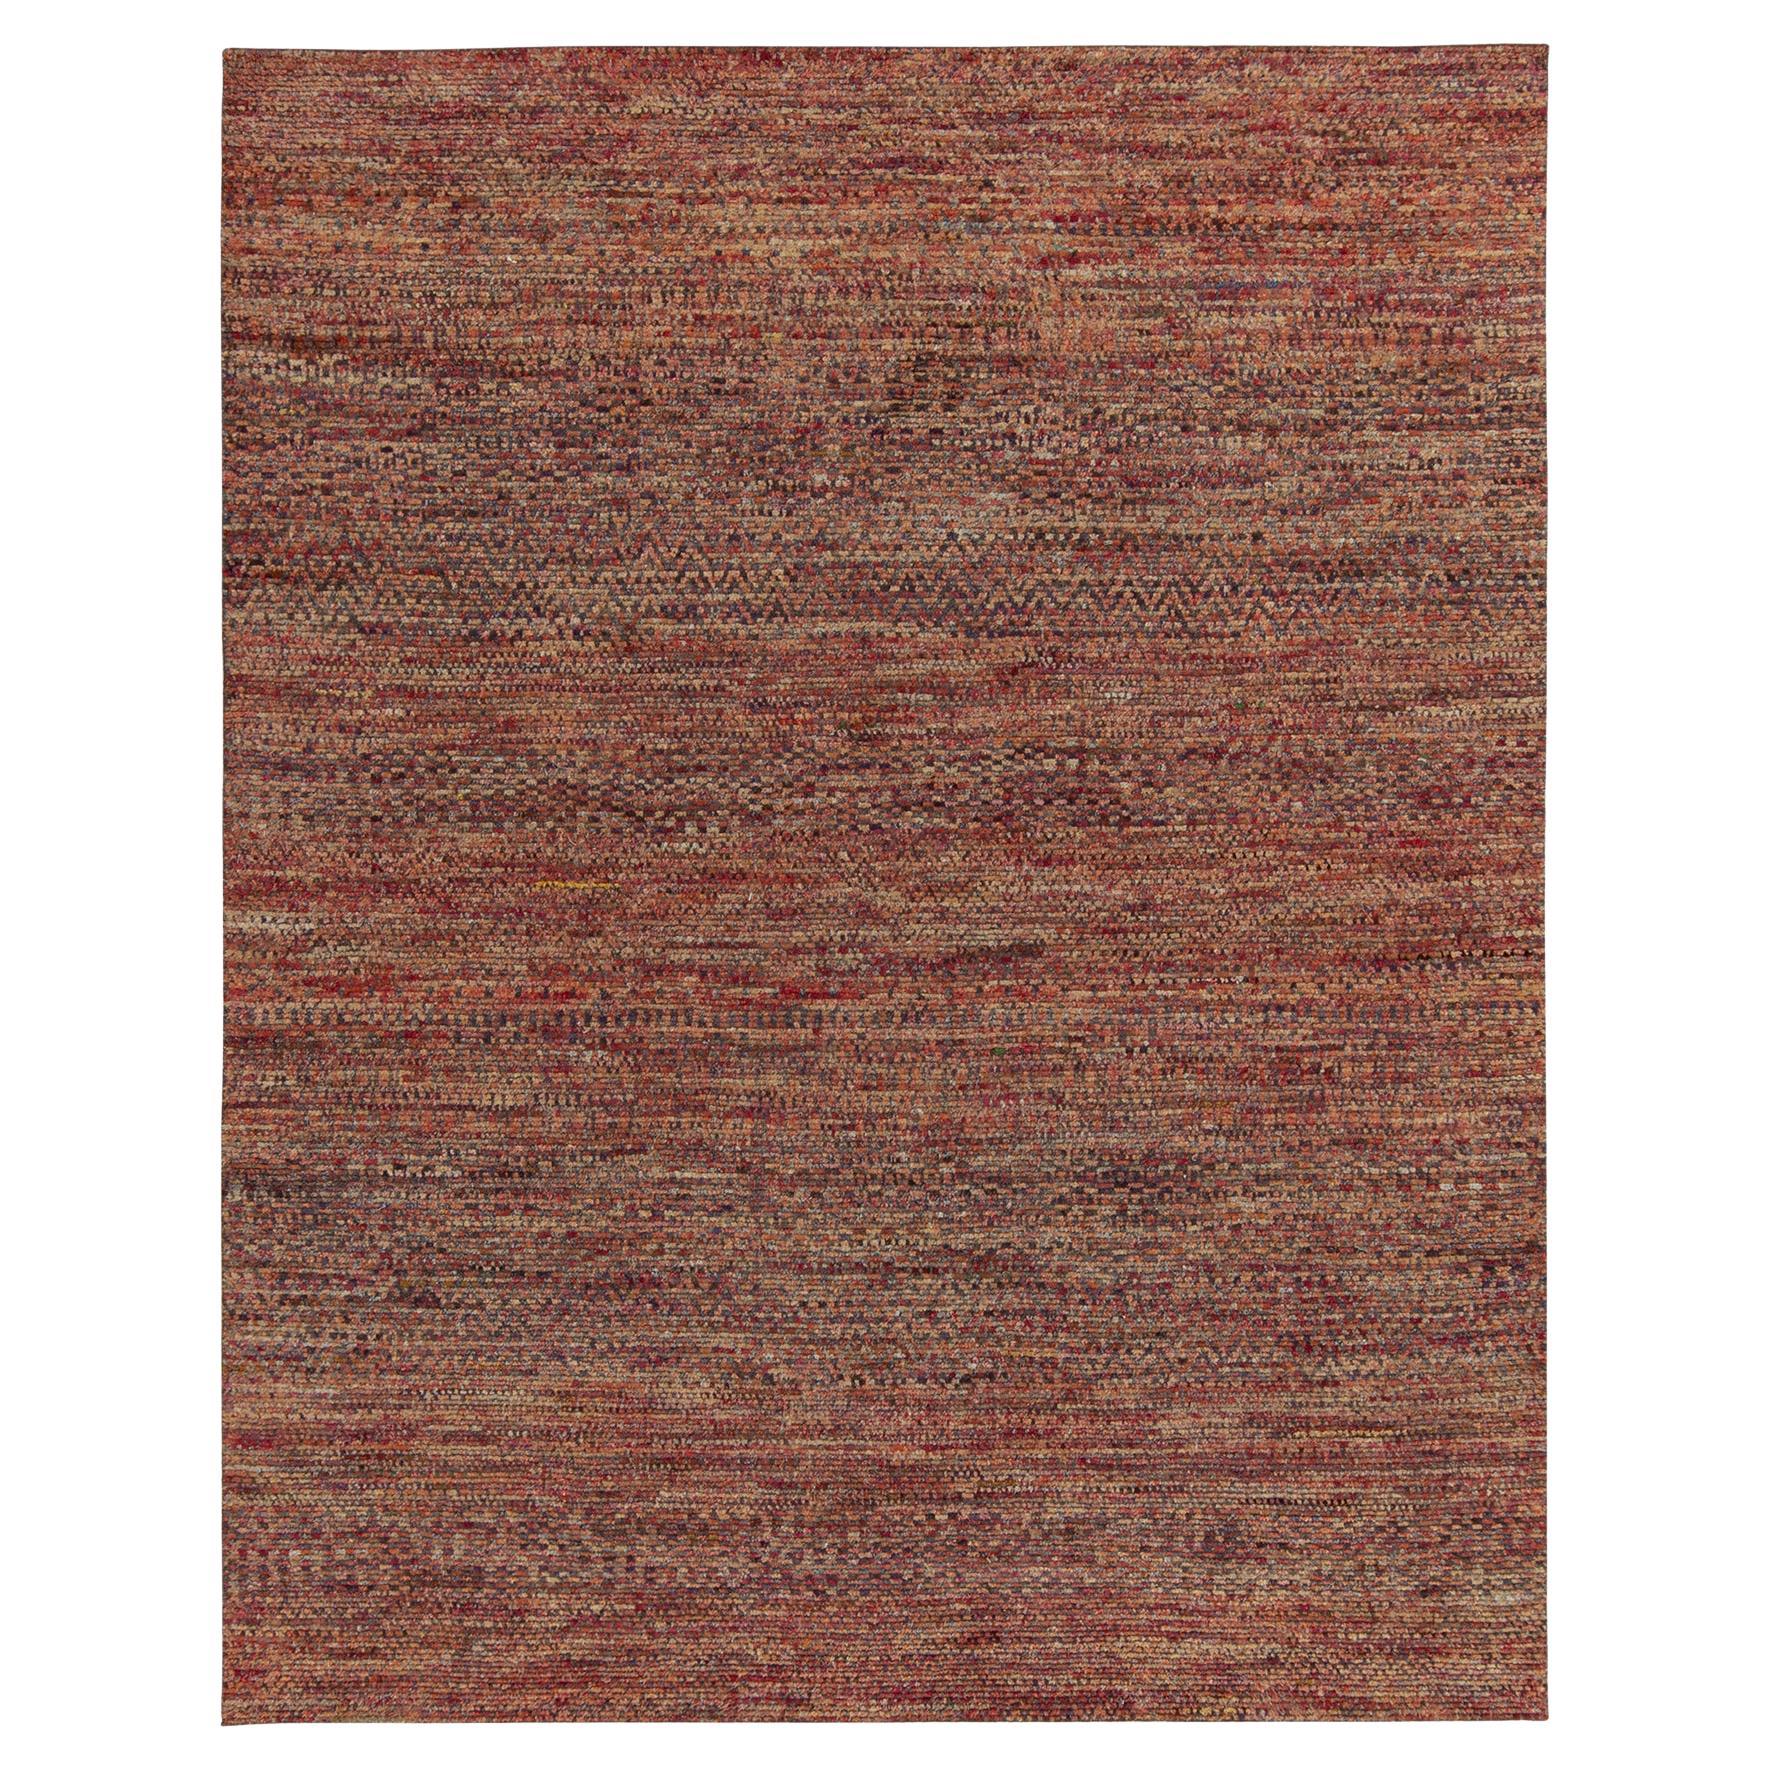 Noué à la main dans une soie de qualité luxueuse, ce tapis contemporain 8x10 audacieux présente des éléments de texture et une profondeur visuelle exceptionnels. Ce motif moderne particulier marie des stries avec des motifs géométriques discrets